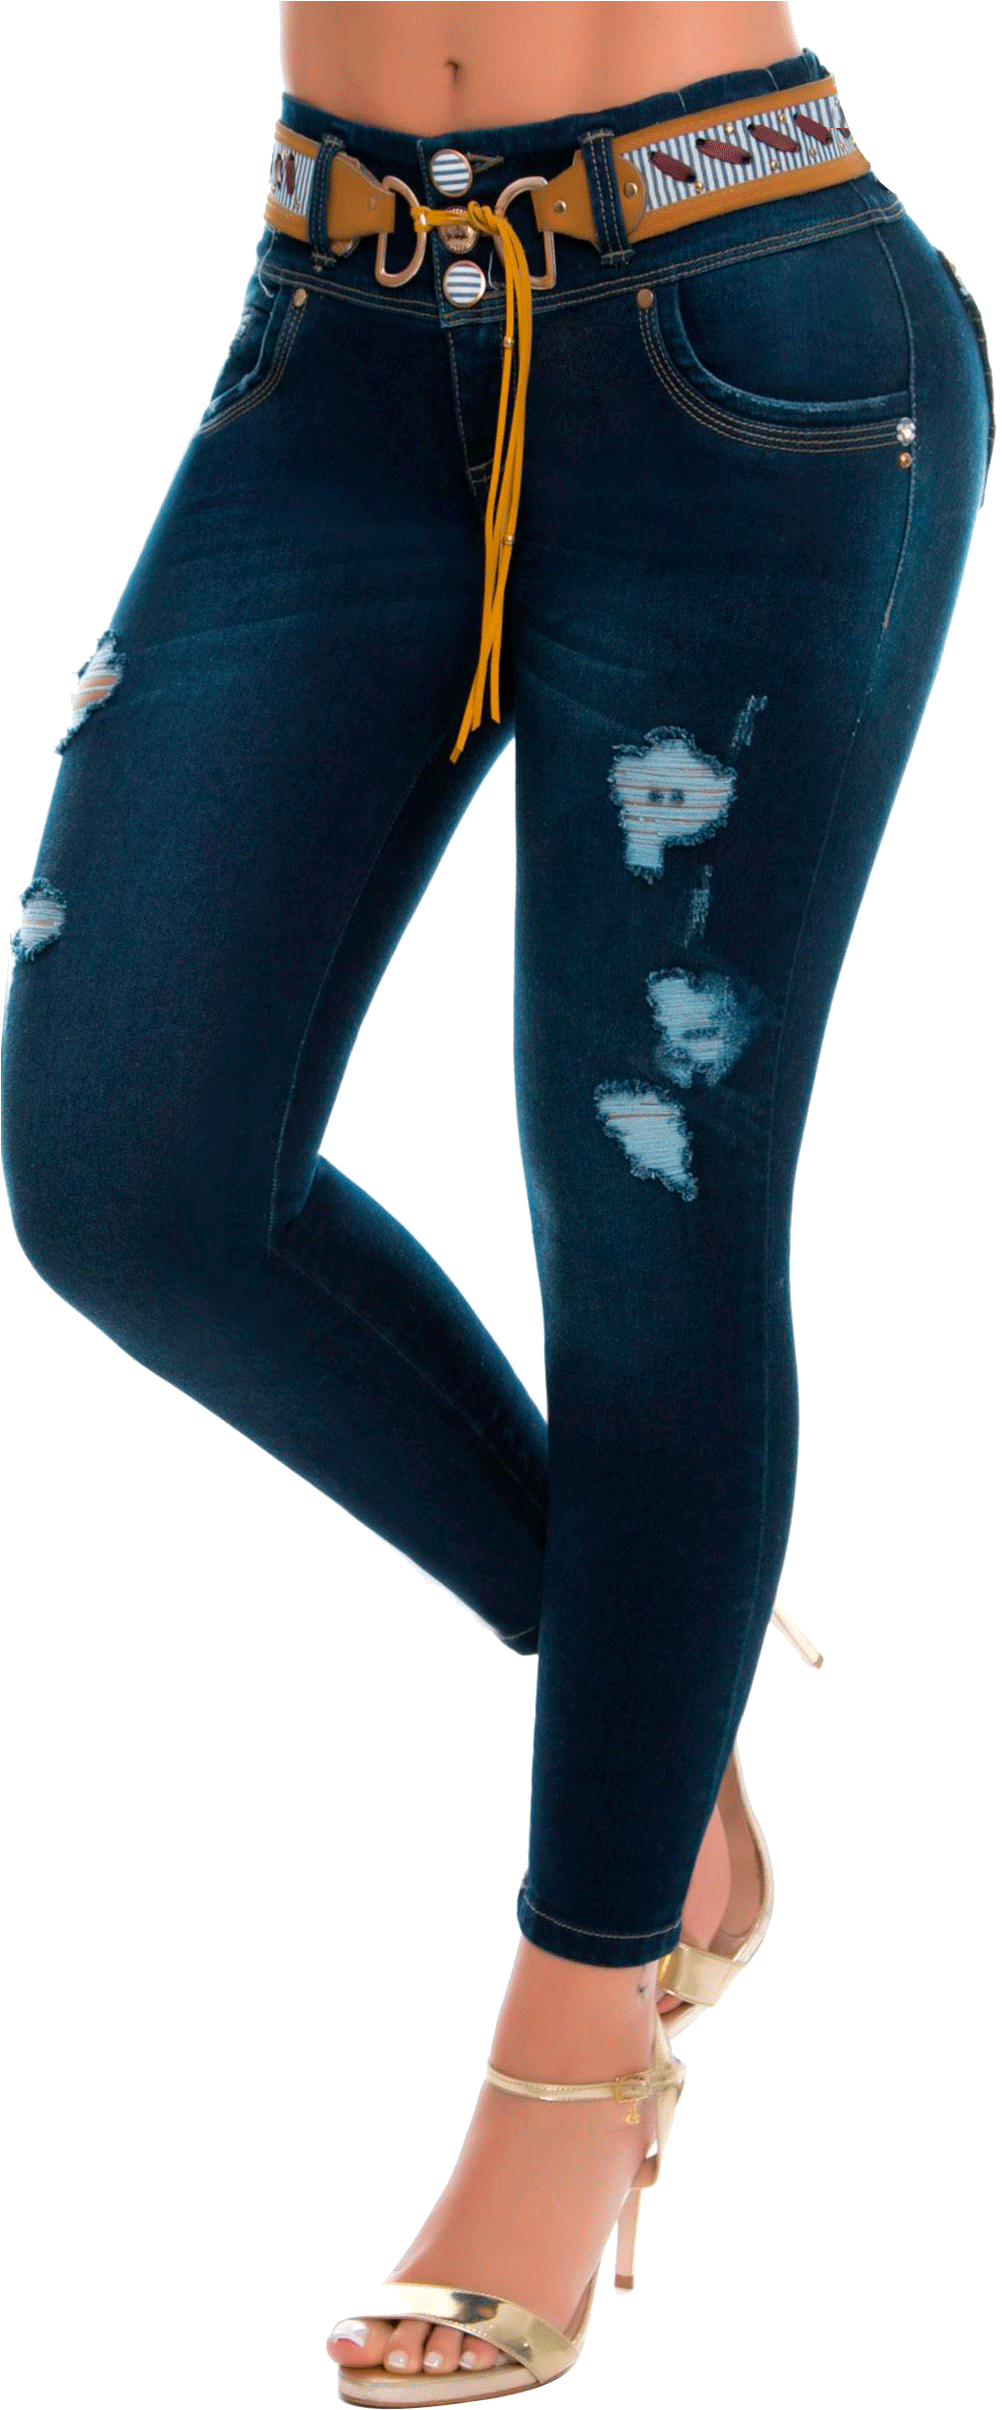 Fiara Jeans - Catálogo - Jeans De Dama 2019 Clipart (1650x2550), Png Download